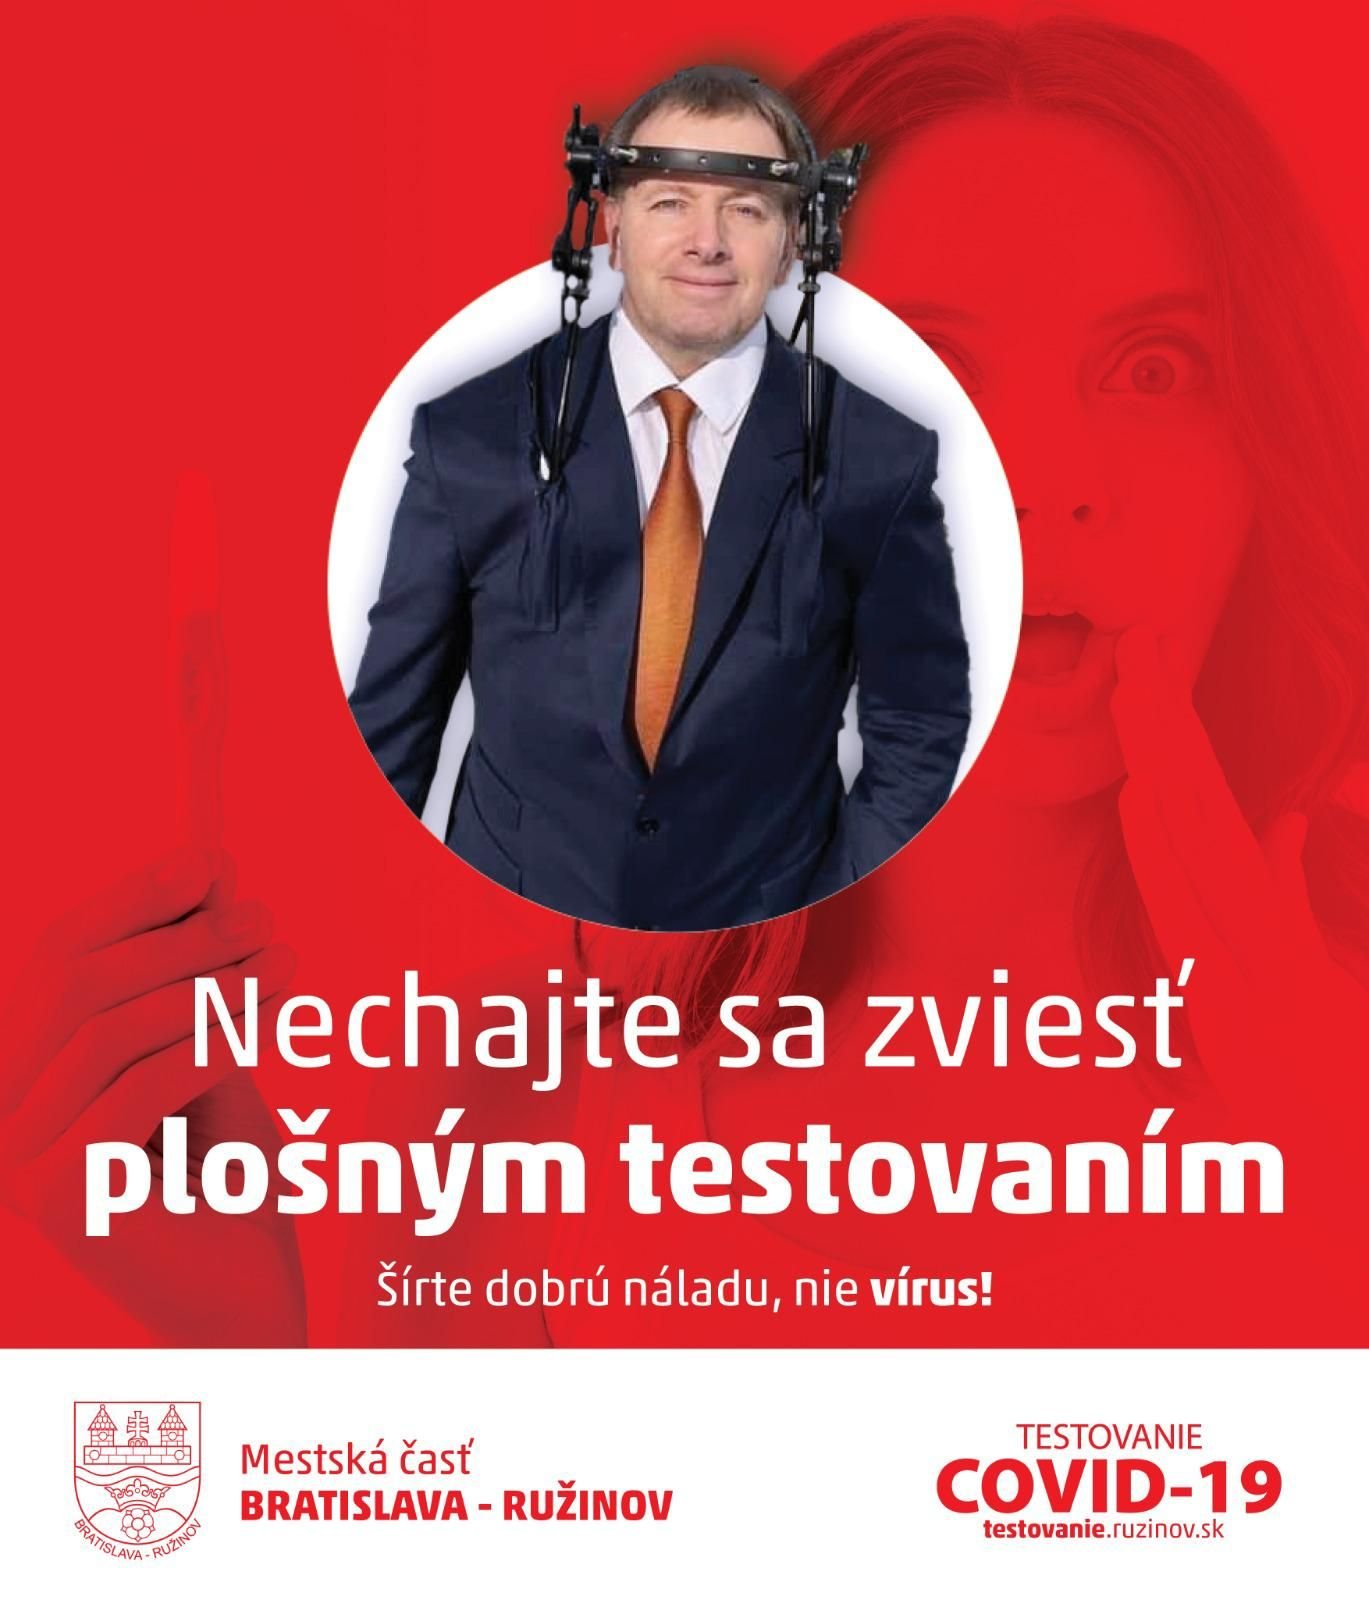 Mestká časť Ružinov svojimi grafikami na propagáciu testovania konkuruje aj najlepším slovenským meme stránkam.